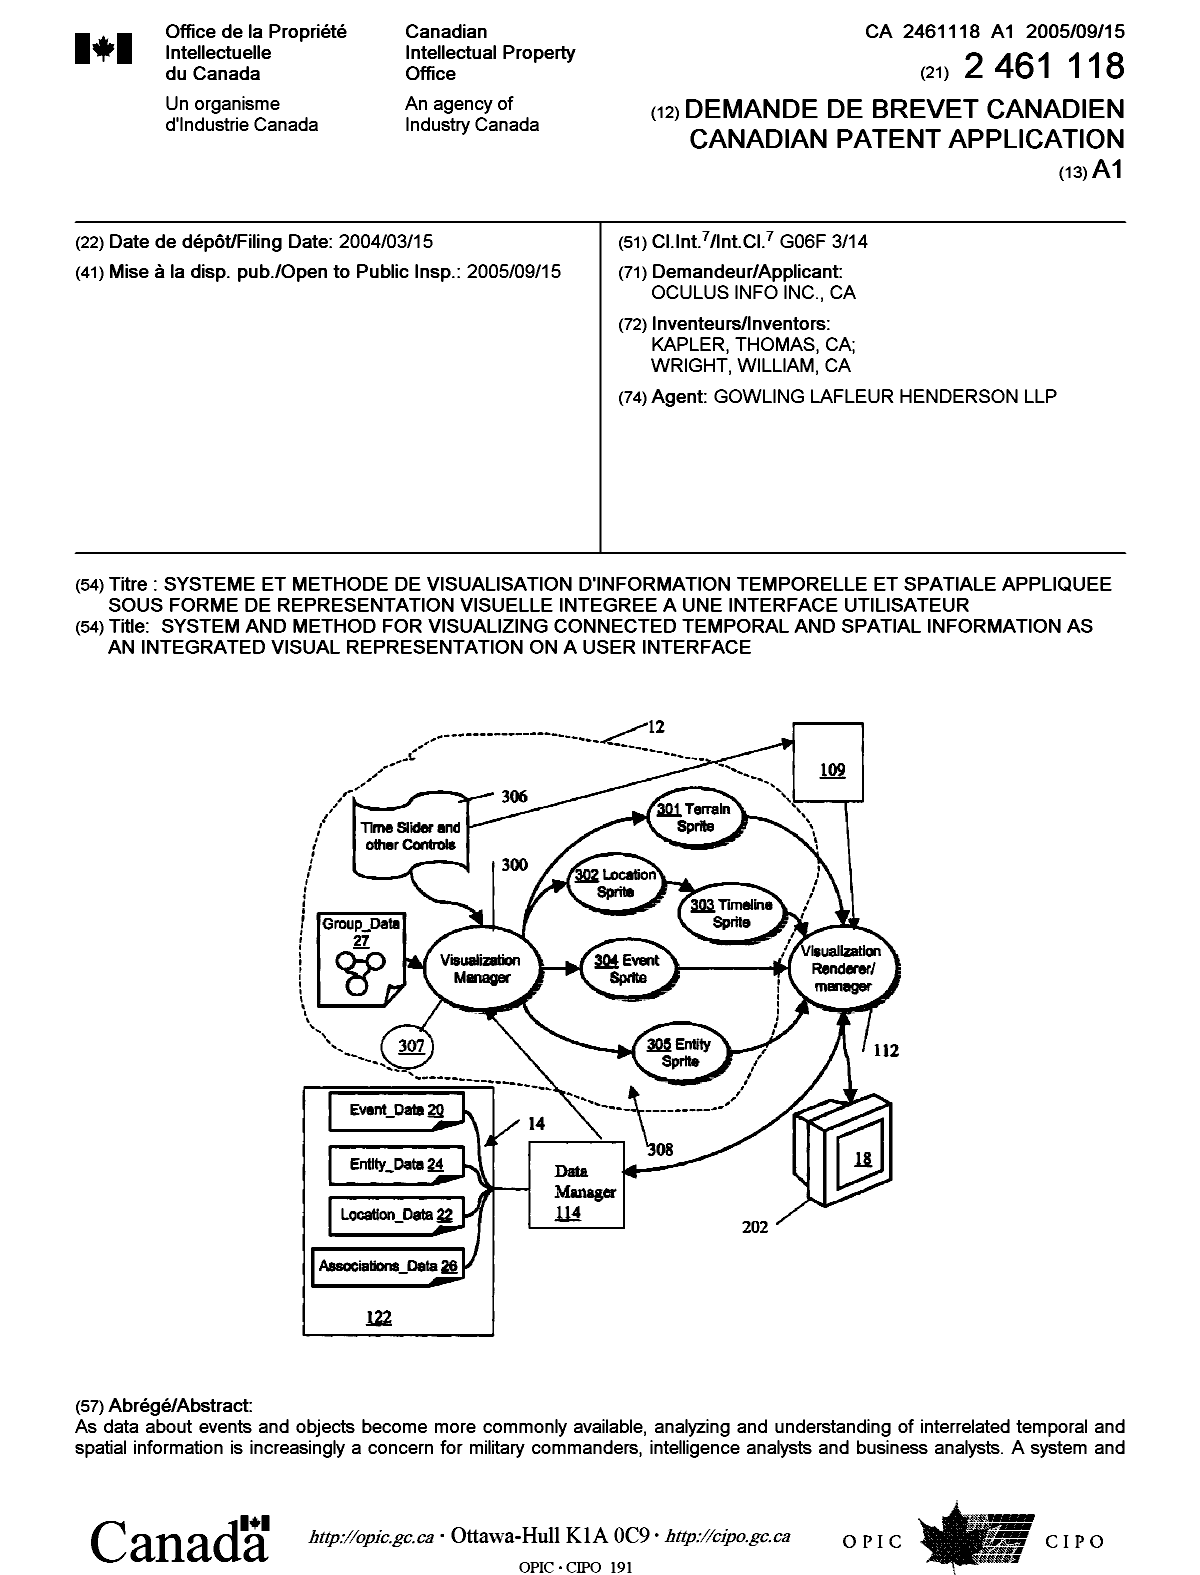 Document de brevet canadien 2461118. Page couverture 20050902. Image 1 de 2